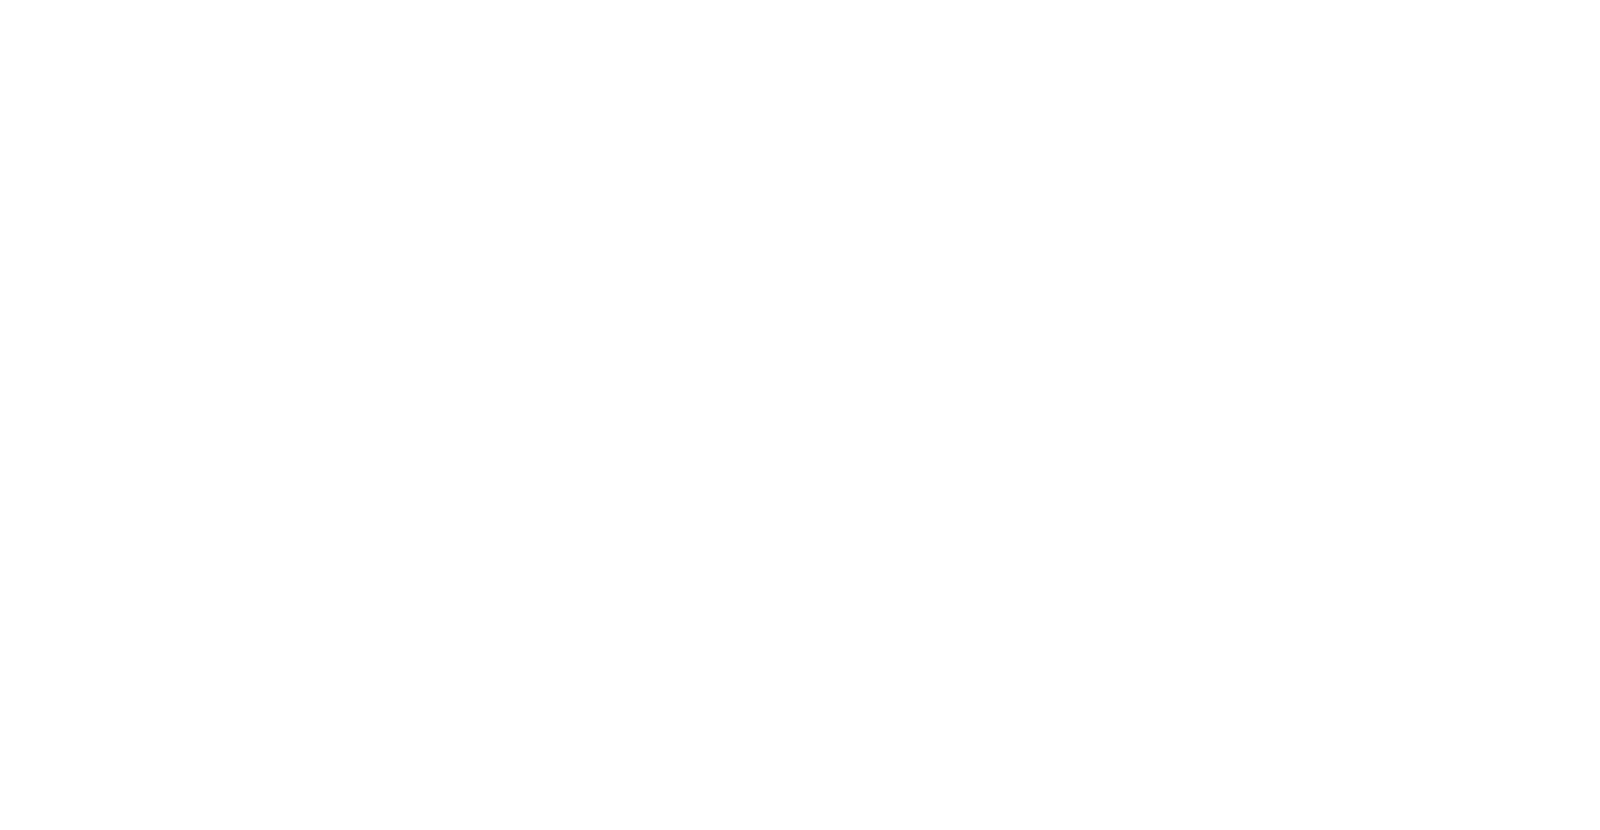 Beechtree pattern